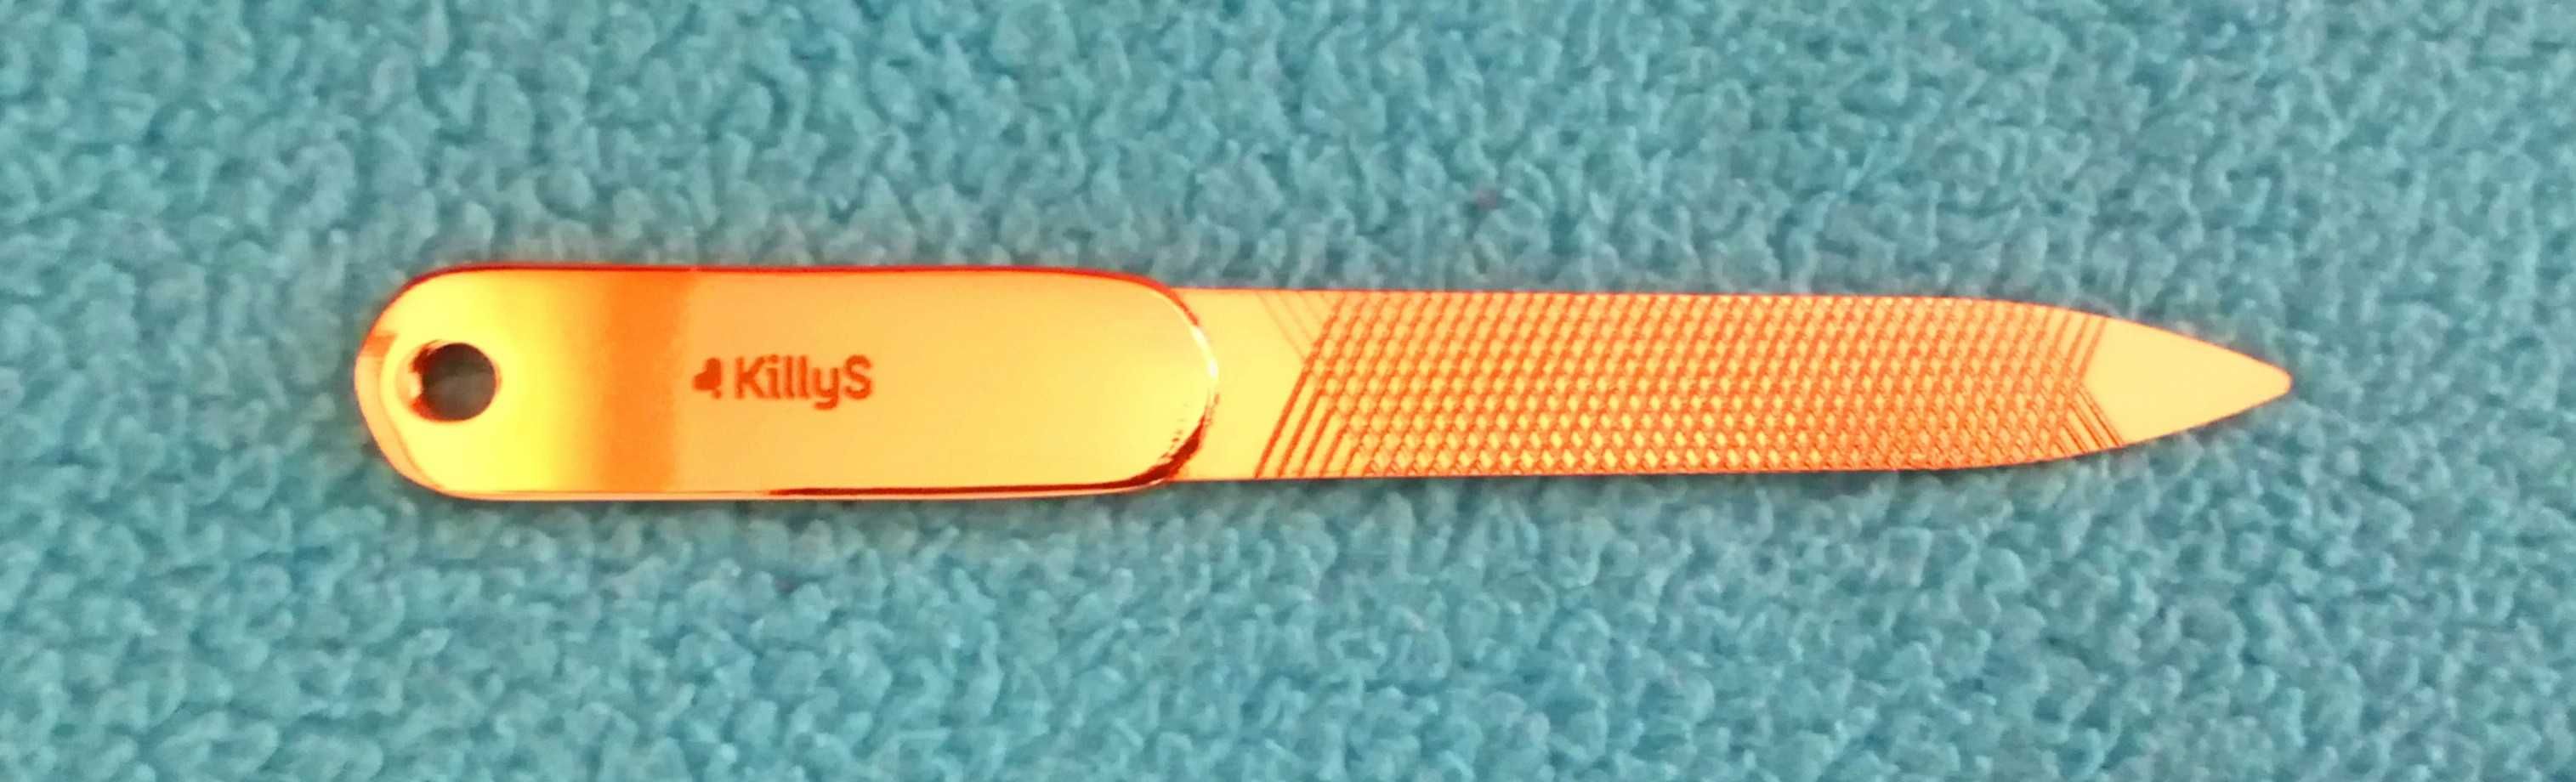 Pilnik do paznokci nowy (długość 9 cm)